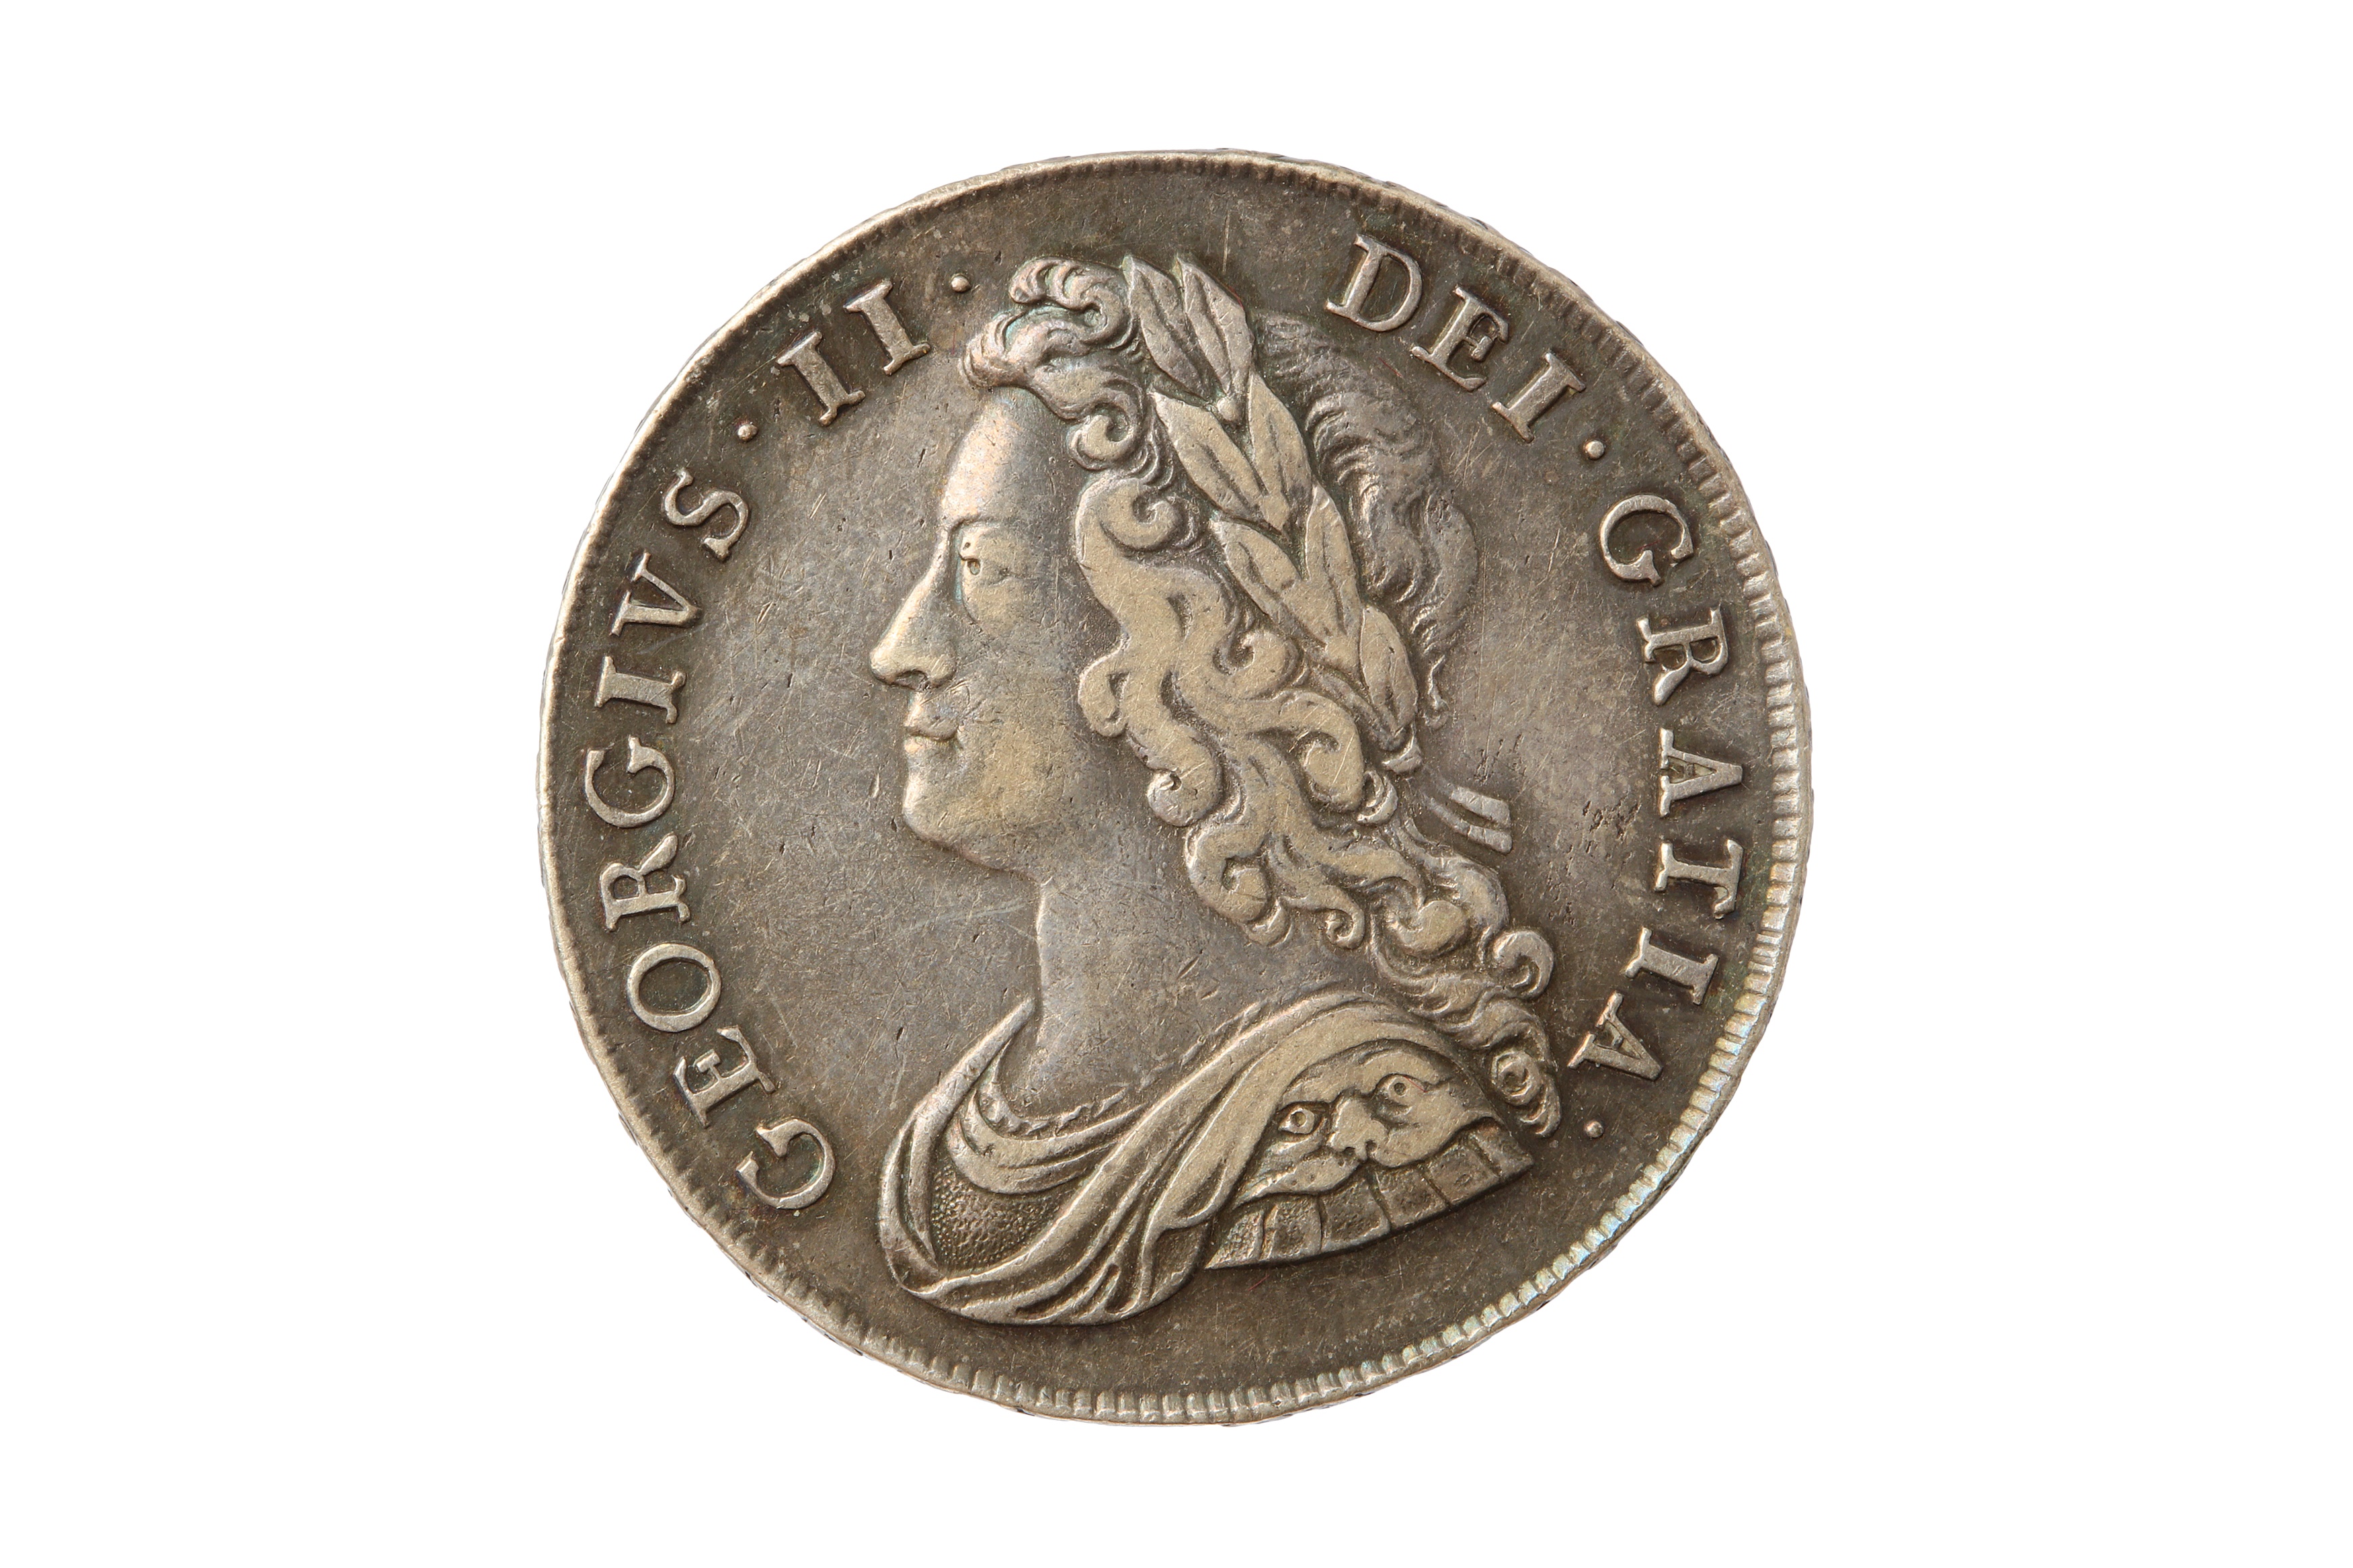 GEORGE II (1727 - 1760), 1741 HALFCROWN.